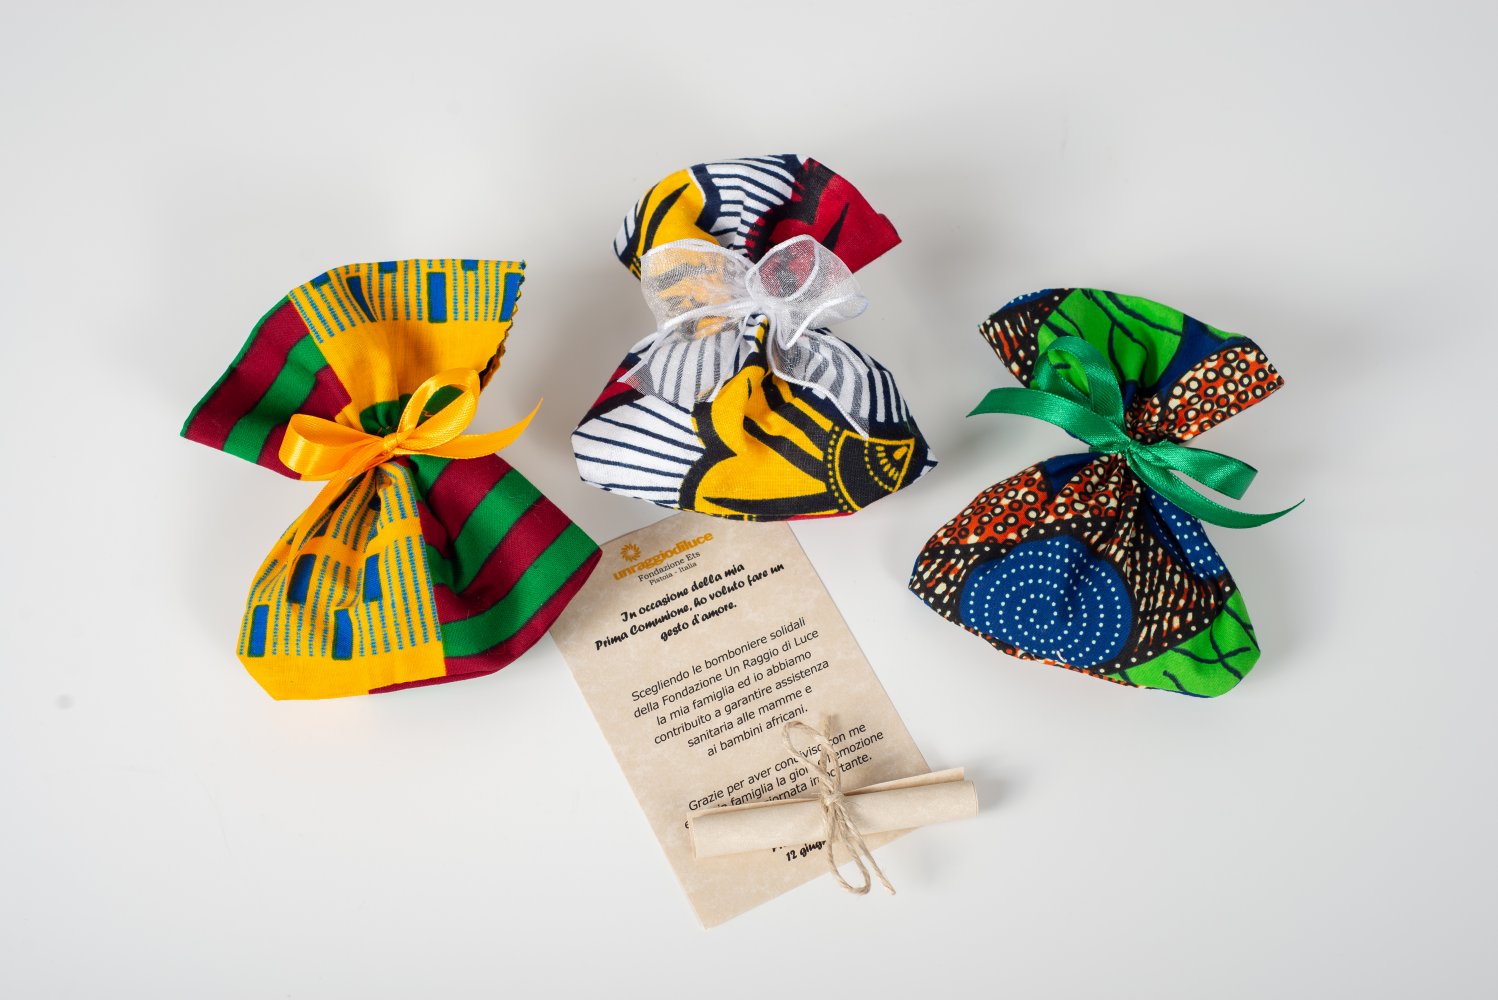 Sacchetti porta confetti in stoffa africana - Fondazione Un Raggio